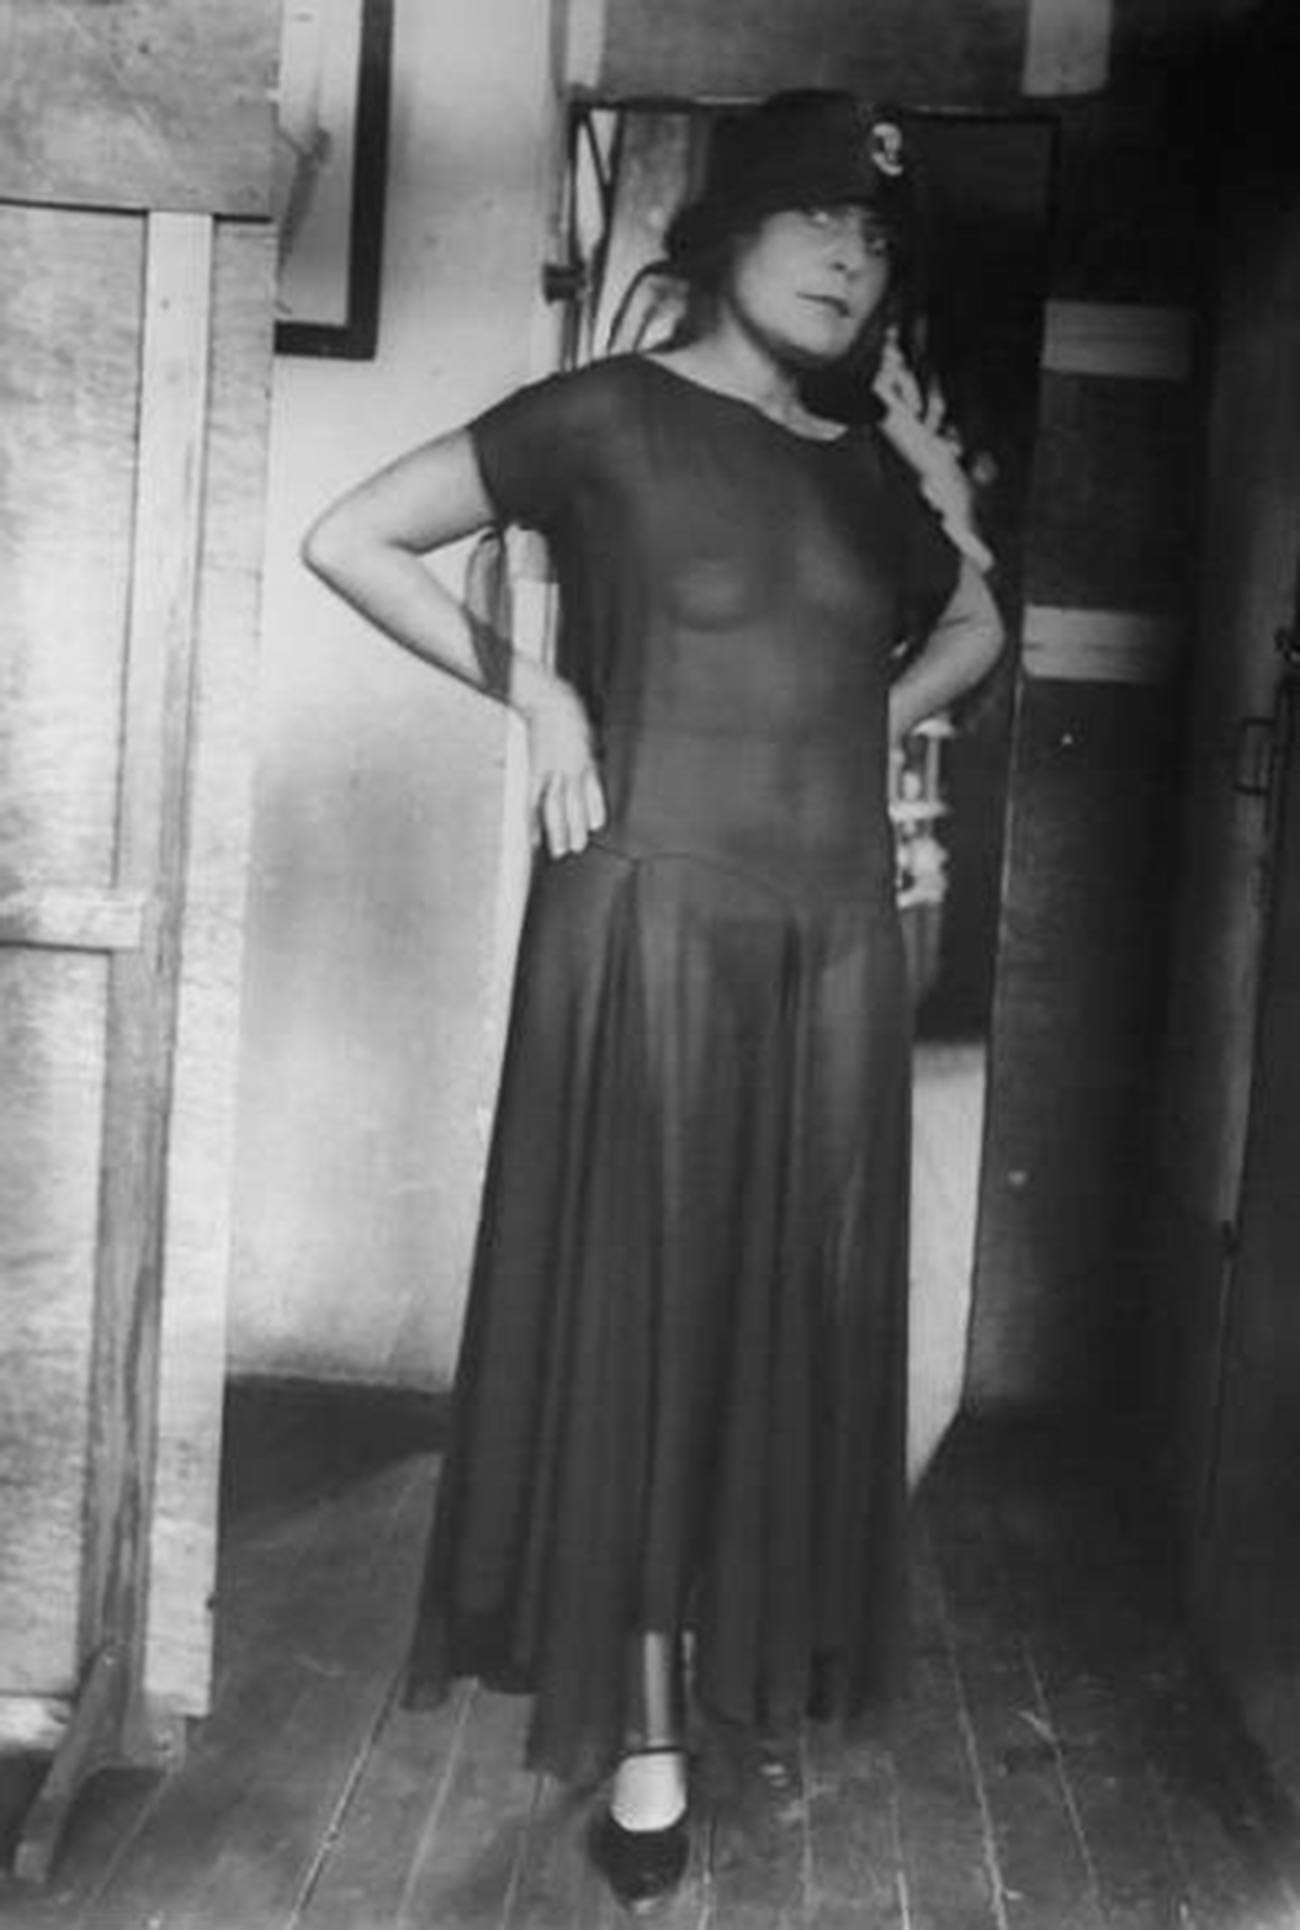 Muza pesnika Vladimirja Majakovskega Lilija Brik v prosojni obleki, 1924